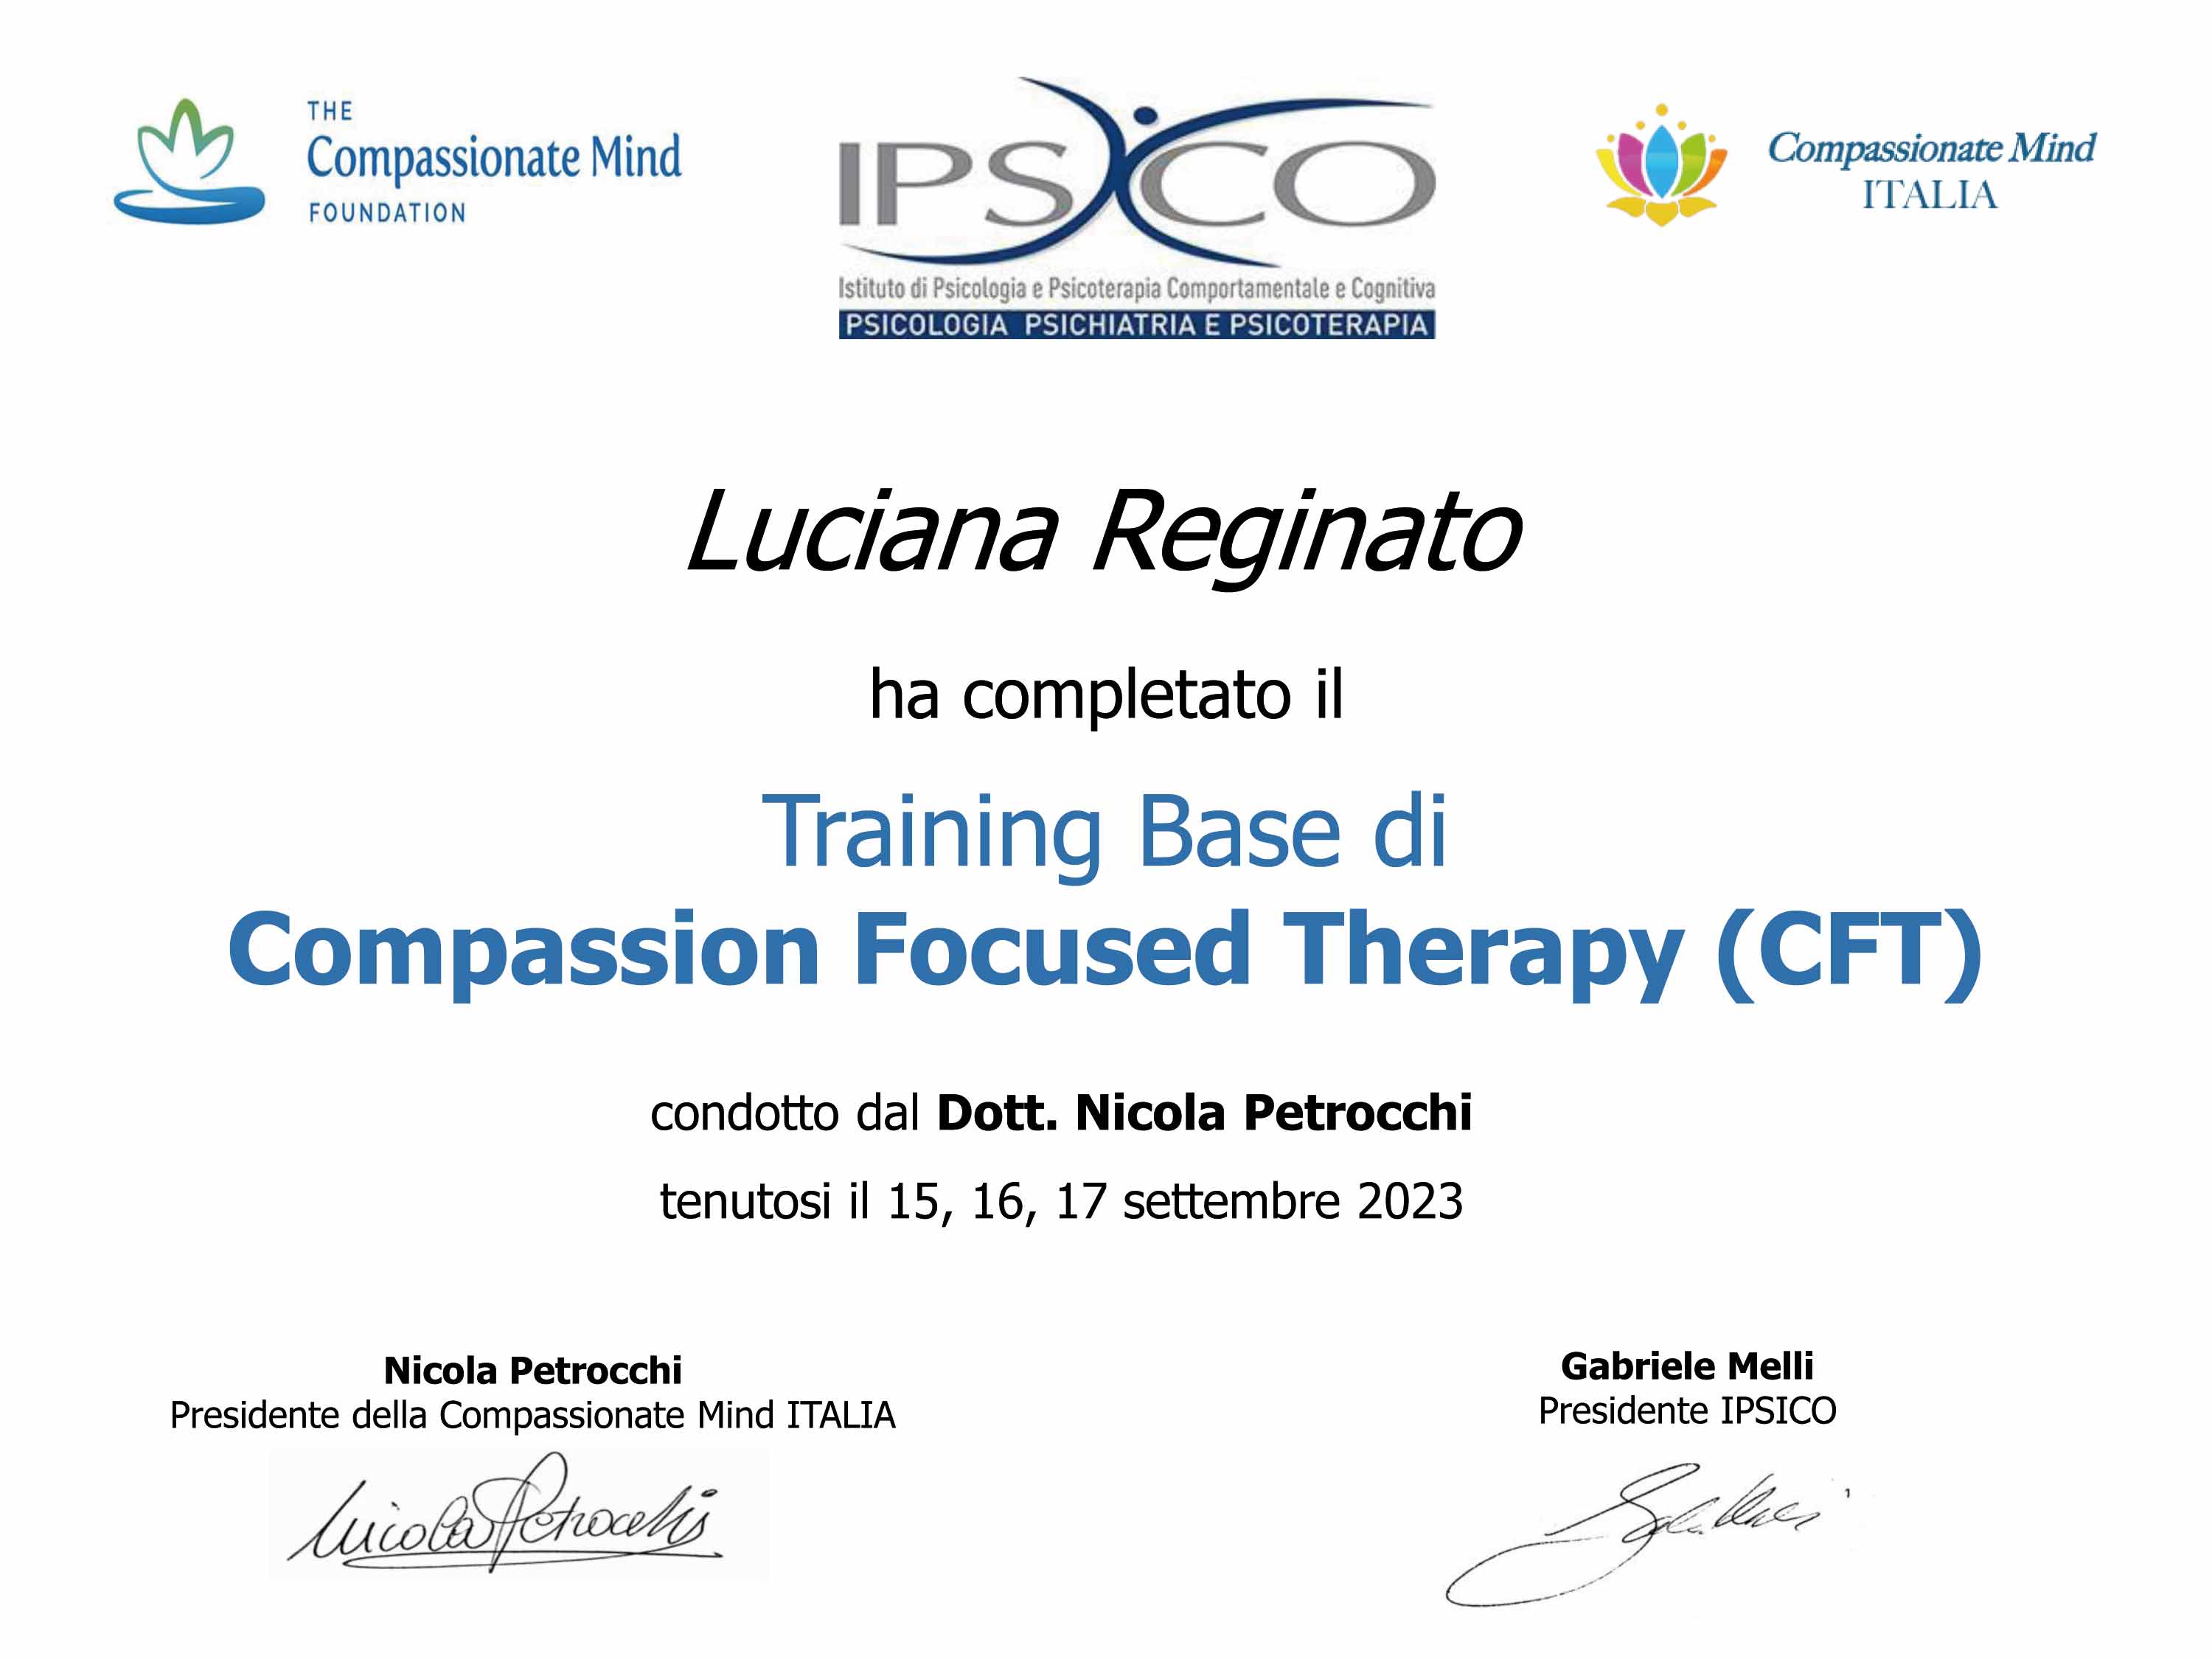 Compassion Focused Therapy - Psicologa e Counselor Luciana Reginato